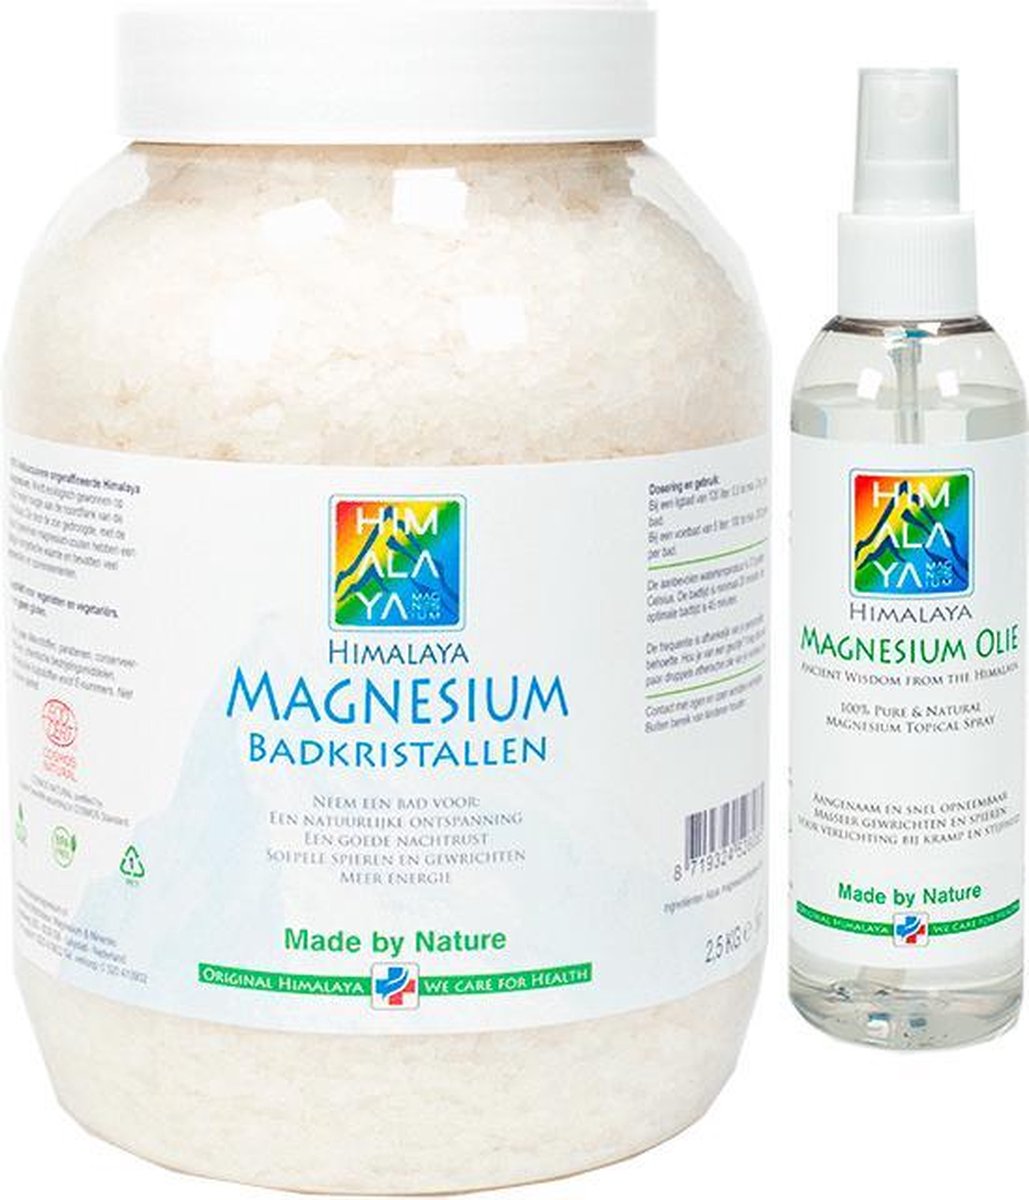 Magnesiumolie spray 200 ml en Magnesium vlokken-badkristallen 2,5 kg van Himalaya magnesium | Food kwaliteit |Magnesiumchloride voor spieren - Himalaya Magnesium